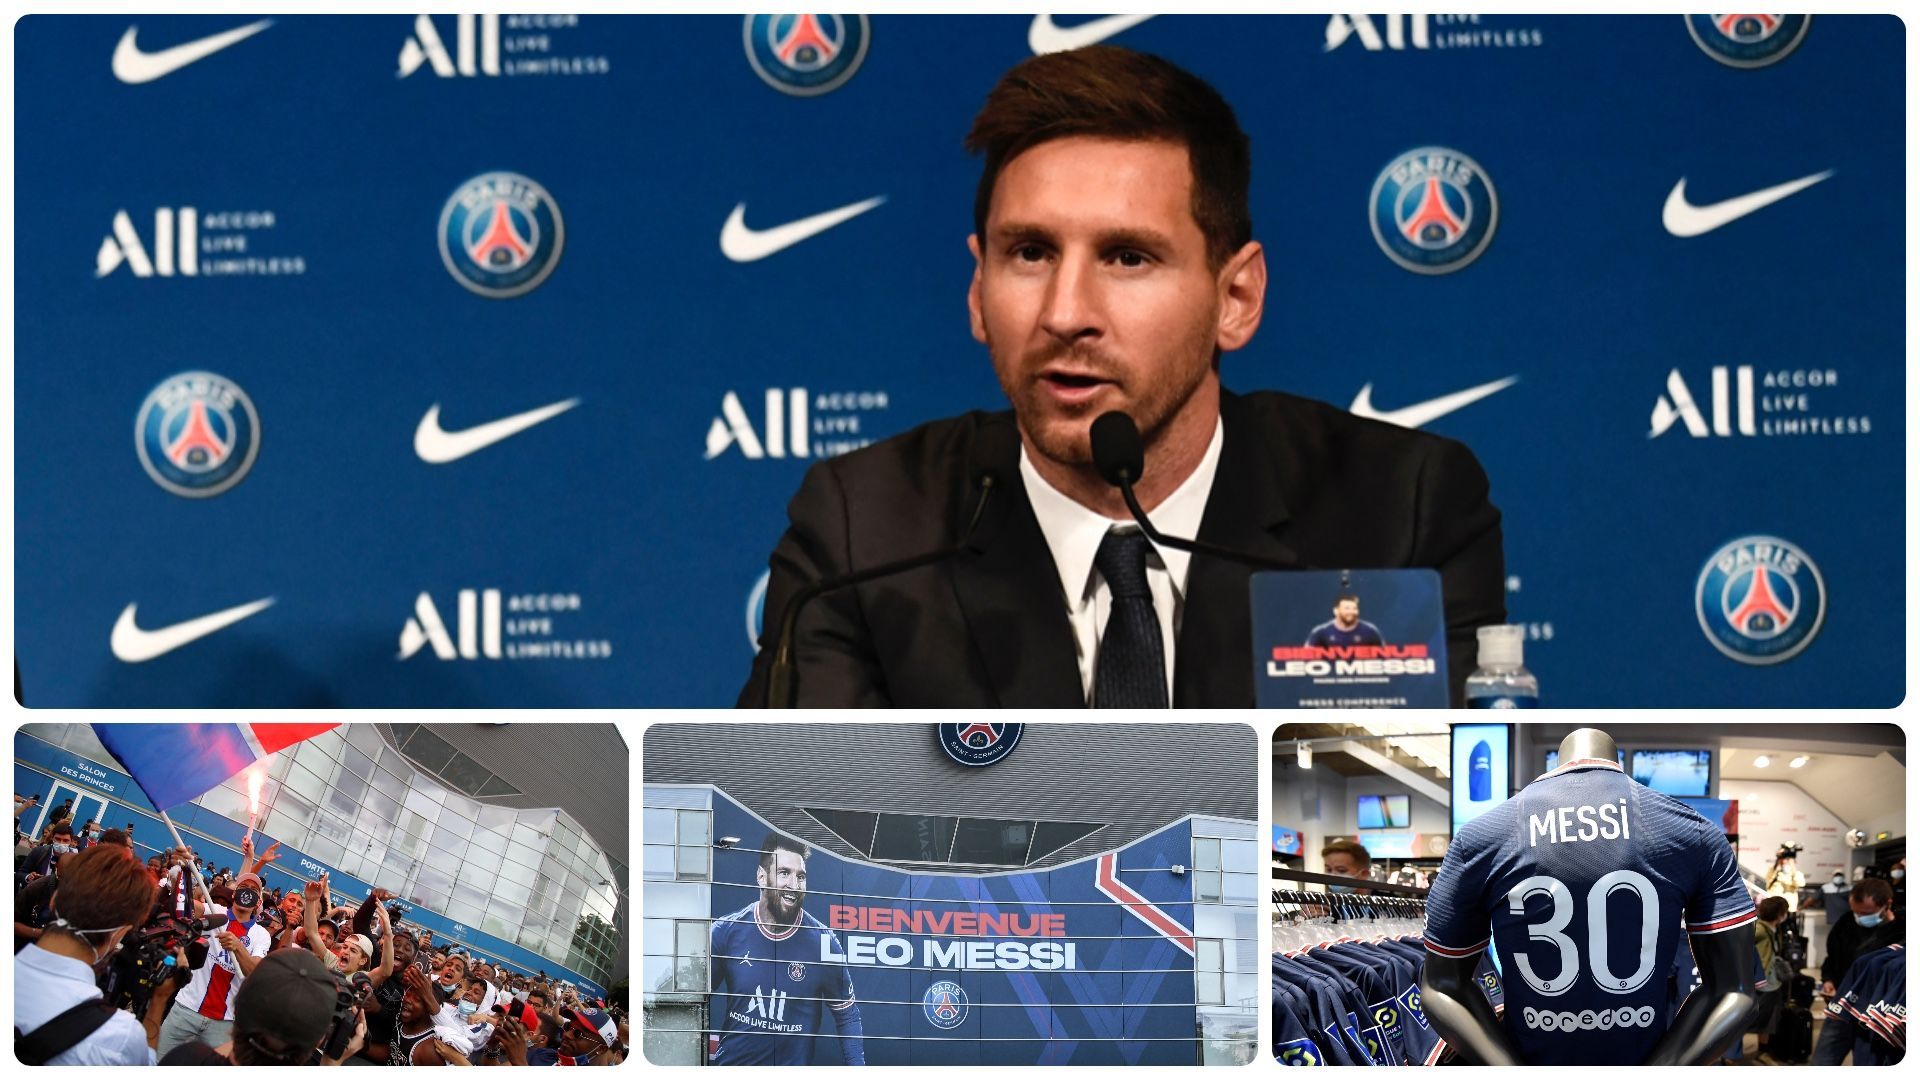 Présentation et conférence de presse de Lionel Messi au PSG